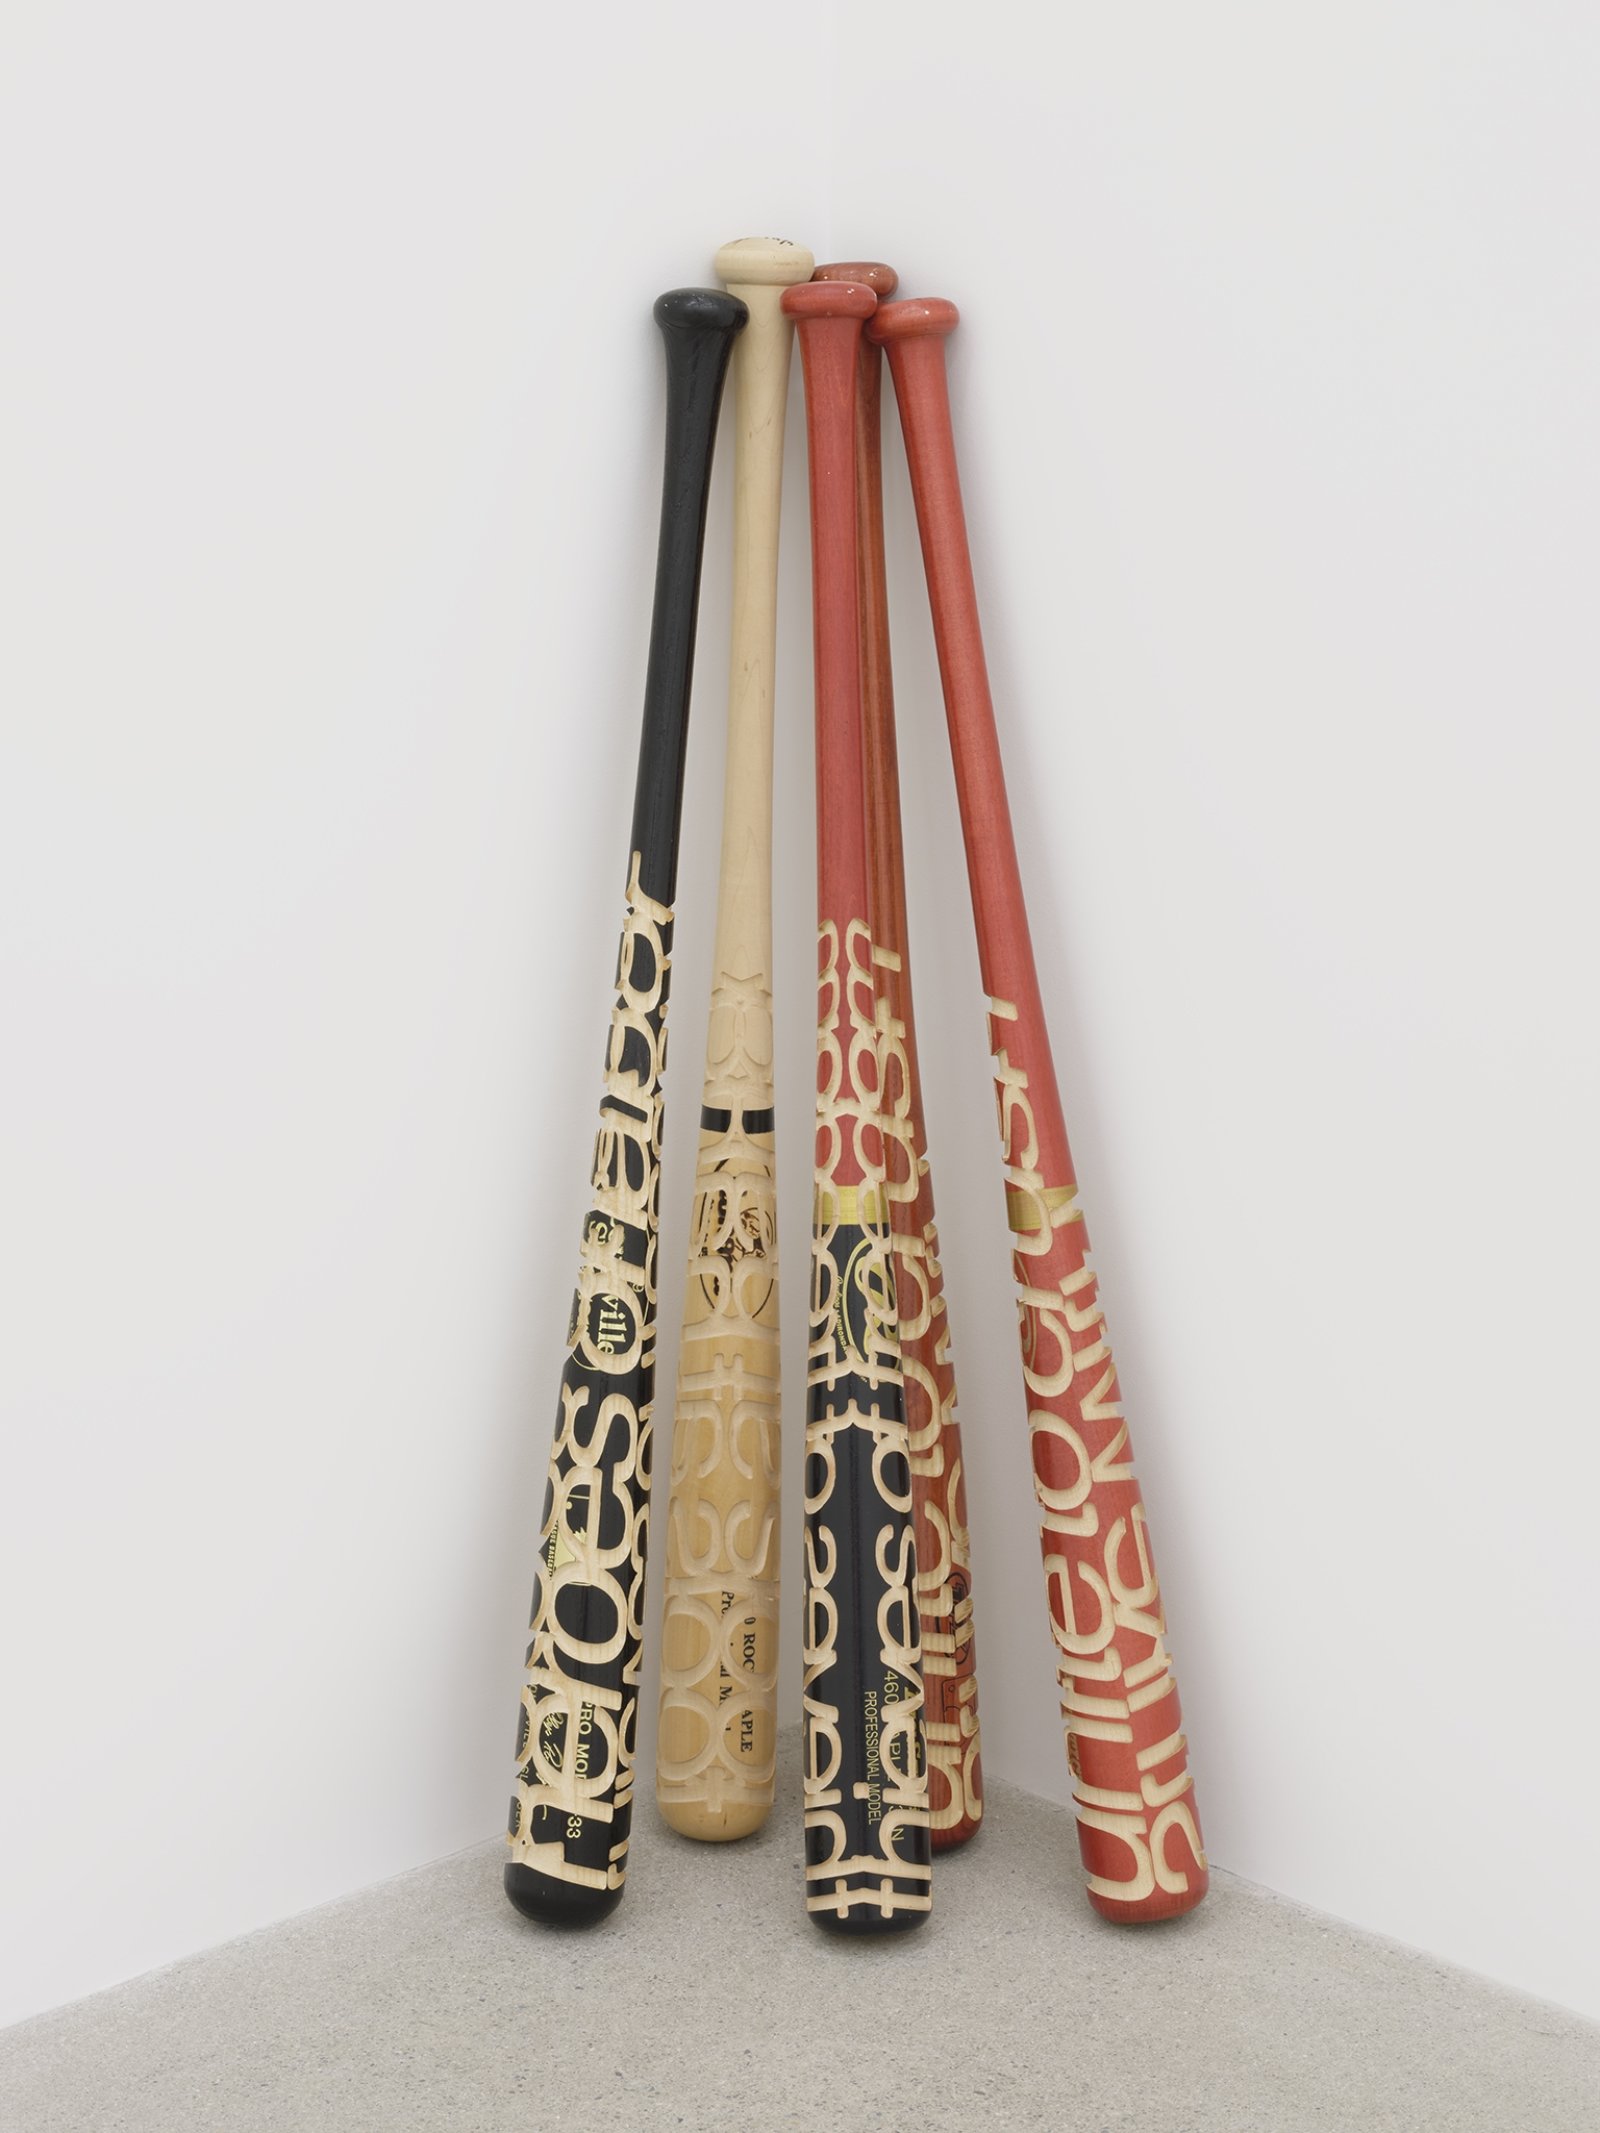 Brian Jungen, Talking Sticks, 2005, carved baseball bats, each 33 x 3 x 3 in. (83 x 8 x 8 cm)